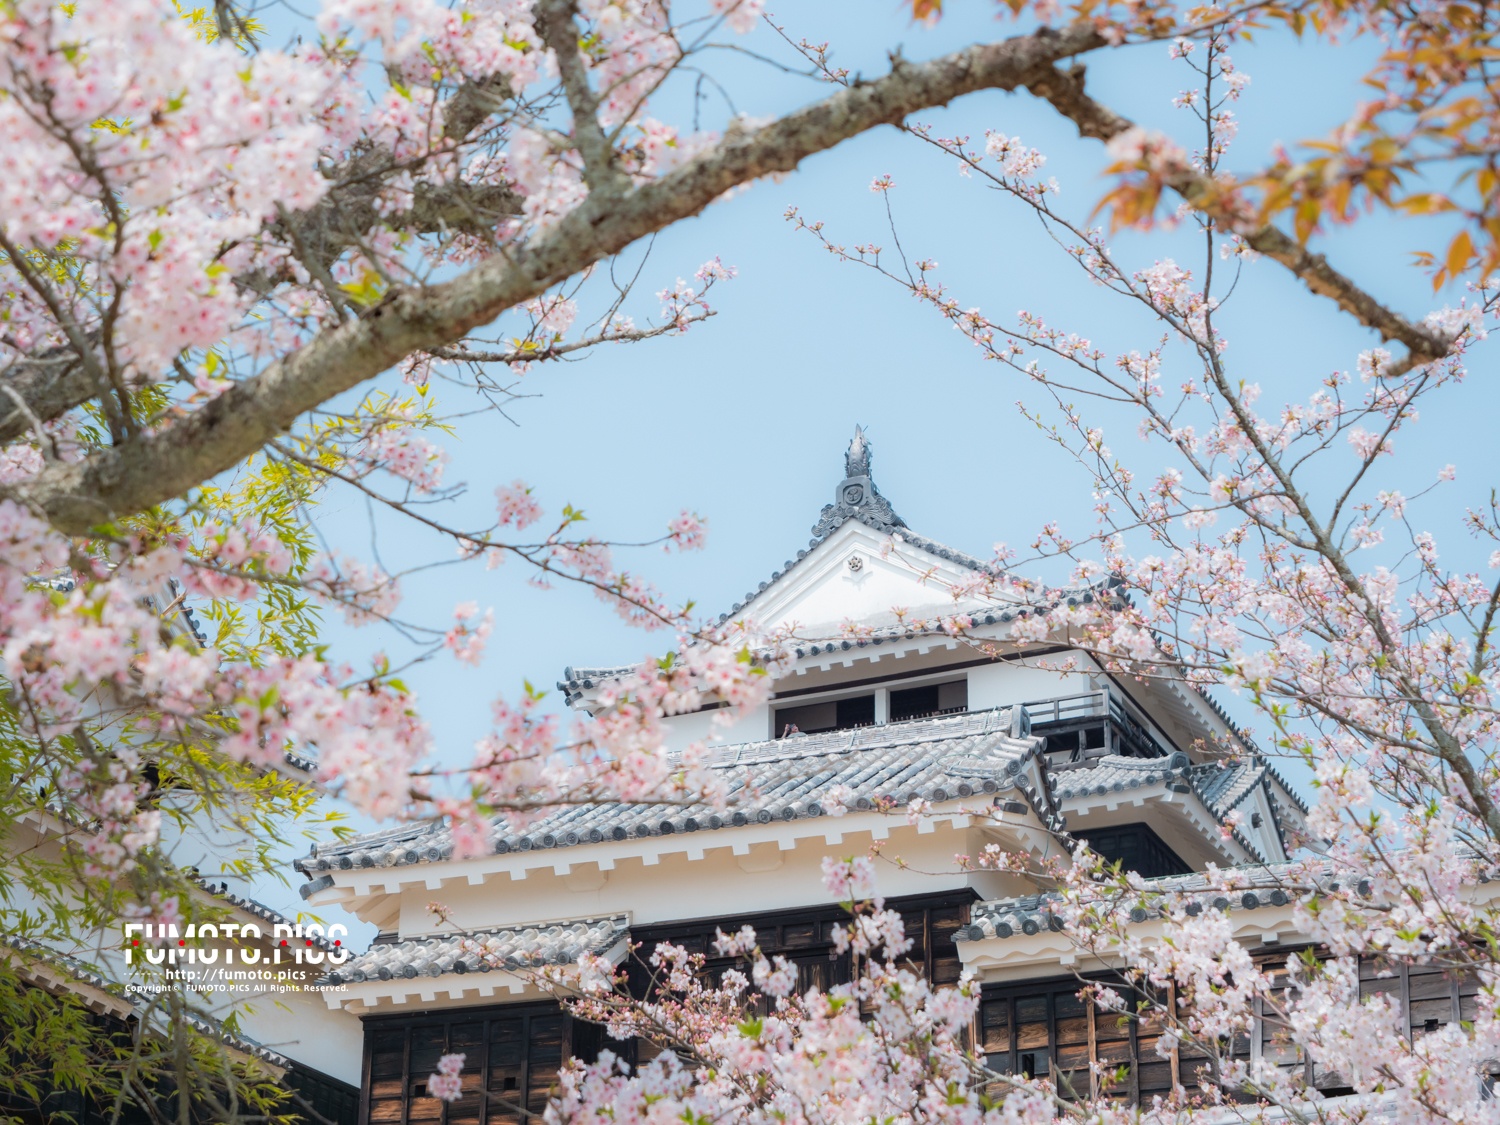 松山城は、日本で12しか残っていない、現存天守を持つ城郭の一つ